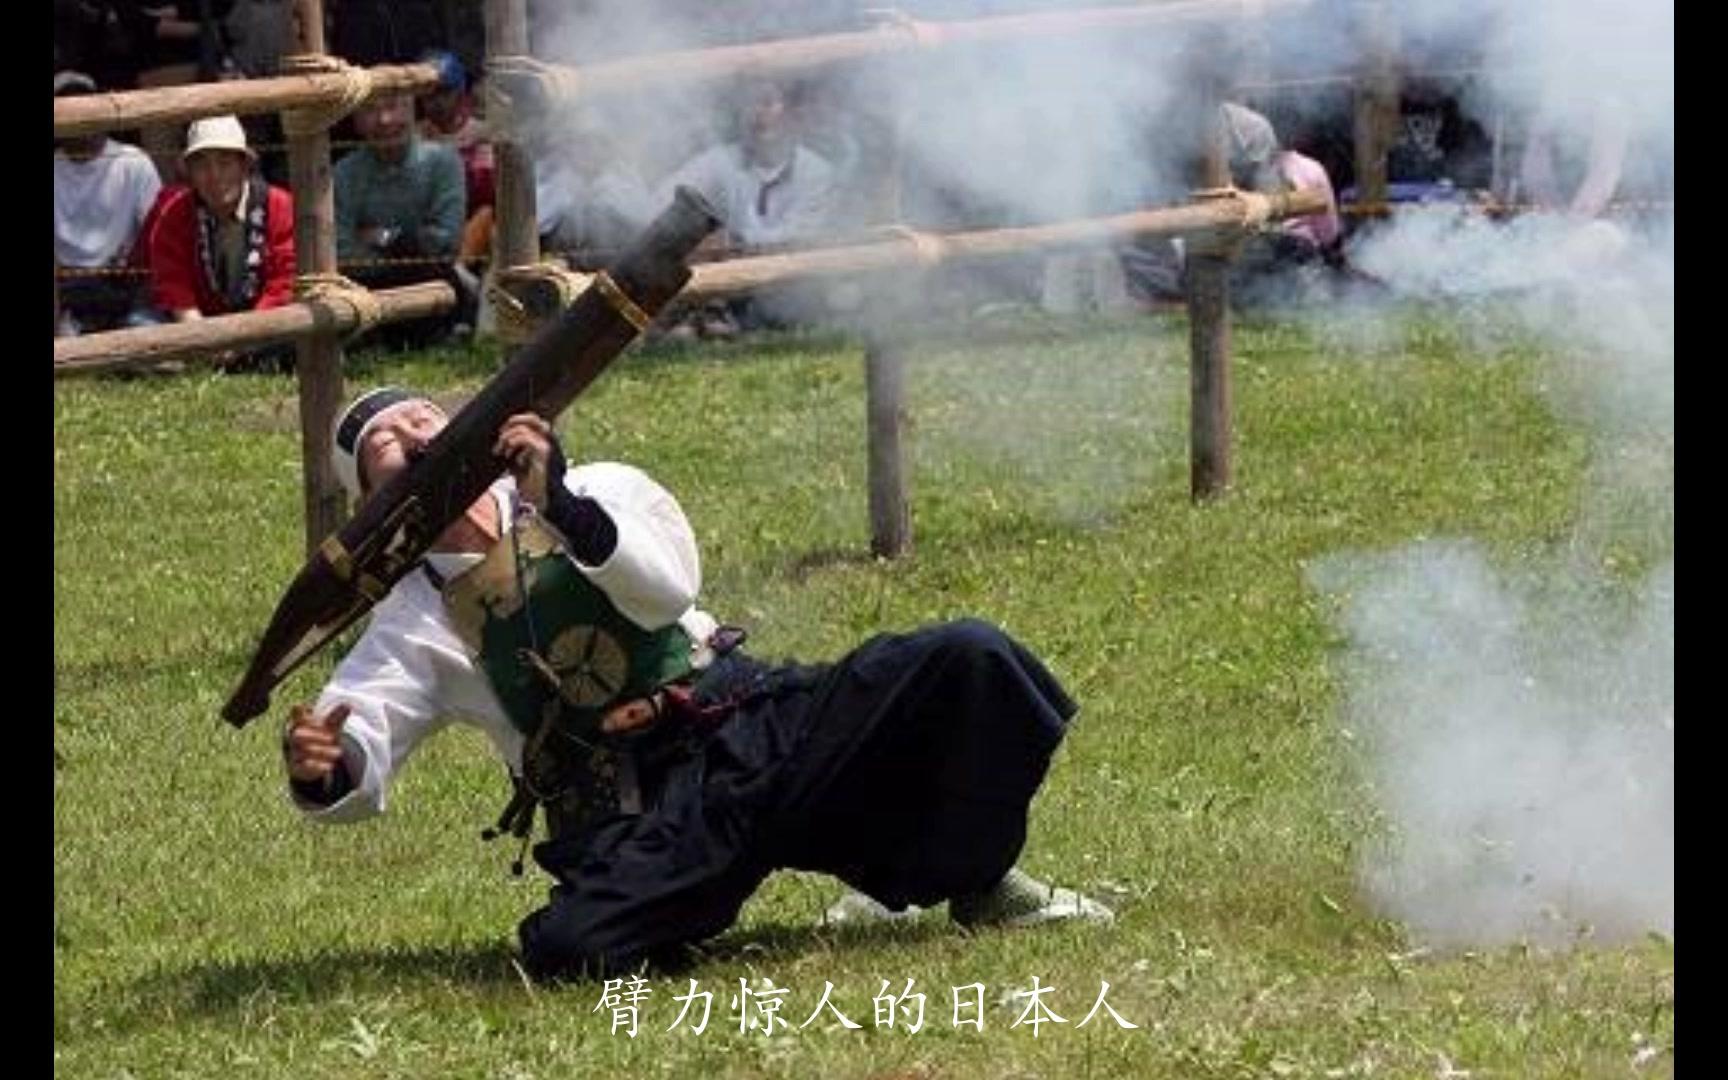 历史日本仿制明朝多管火铳与臂力惊人的日本大筒